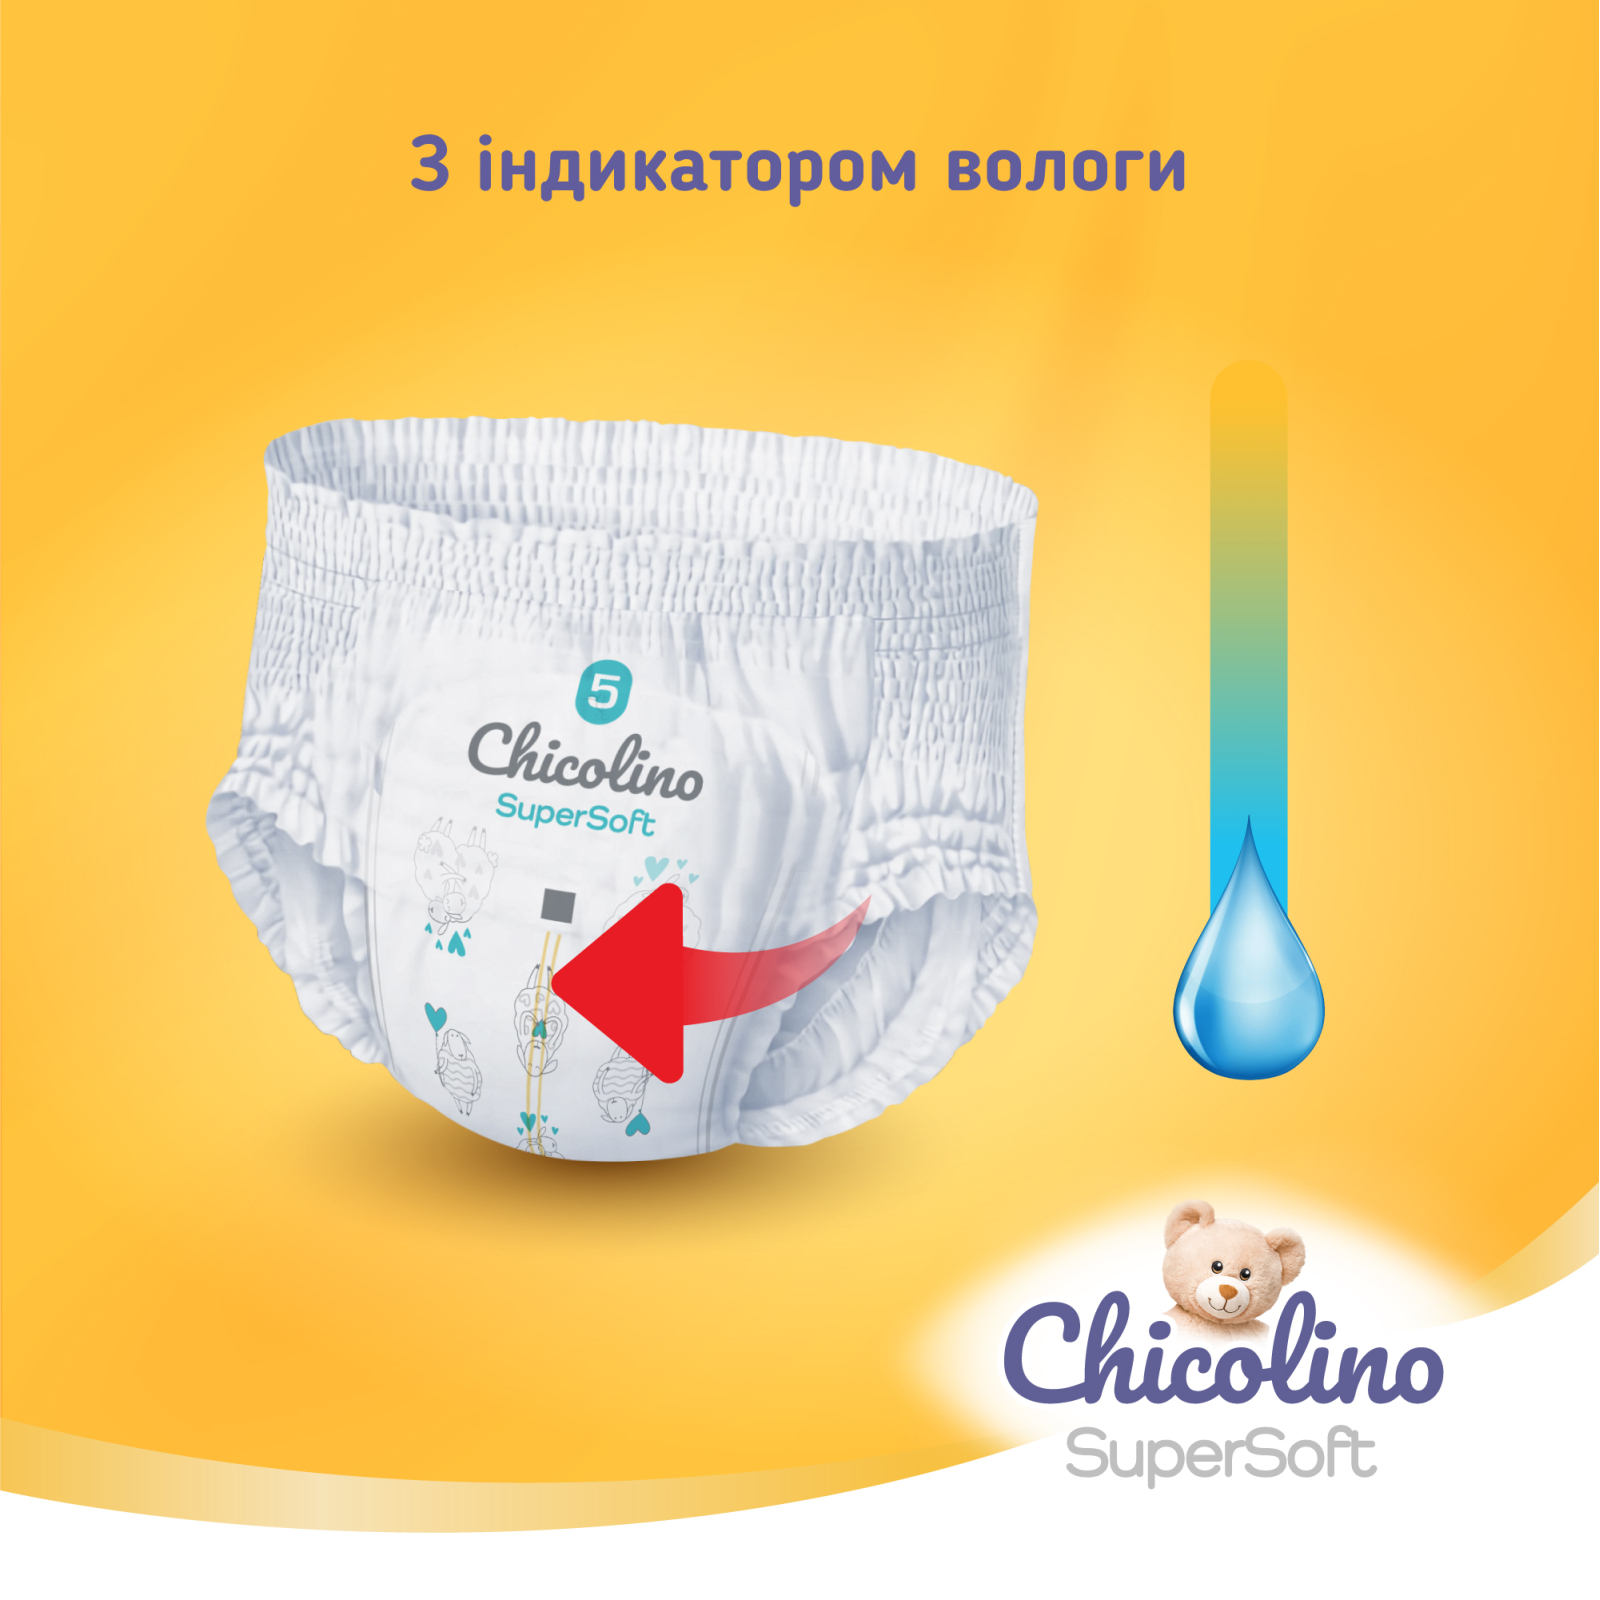 Подгузники Chicolino Super Soft Размер 4 (7-14 кг) 36 шт, 4 Упаковки (4823098414650) изображение 2